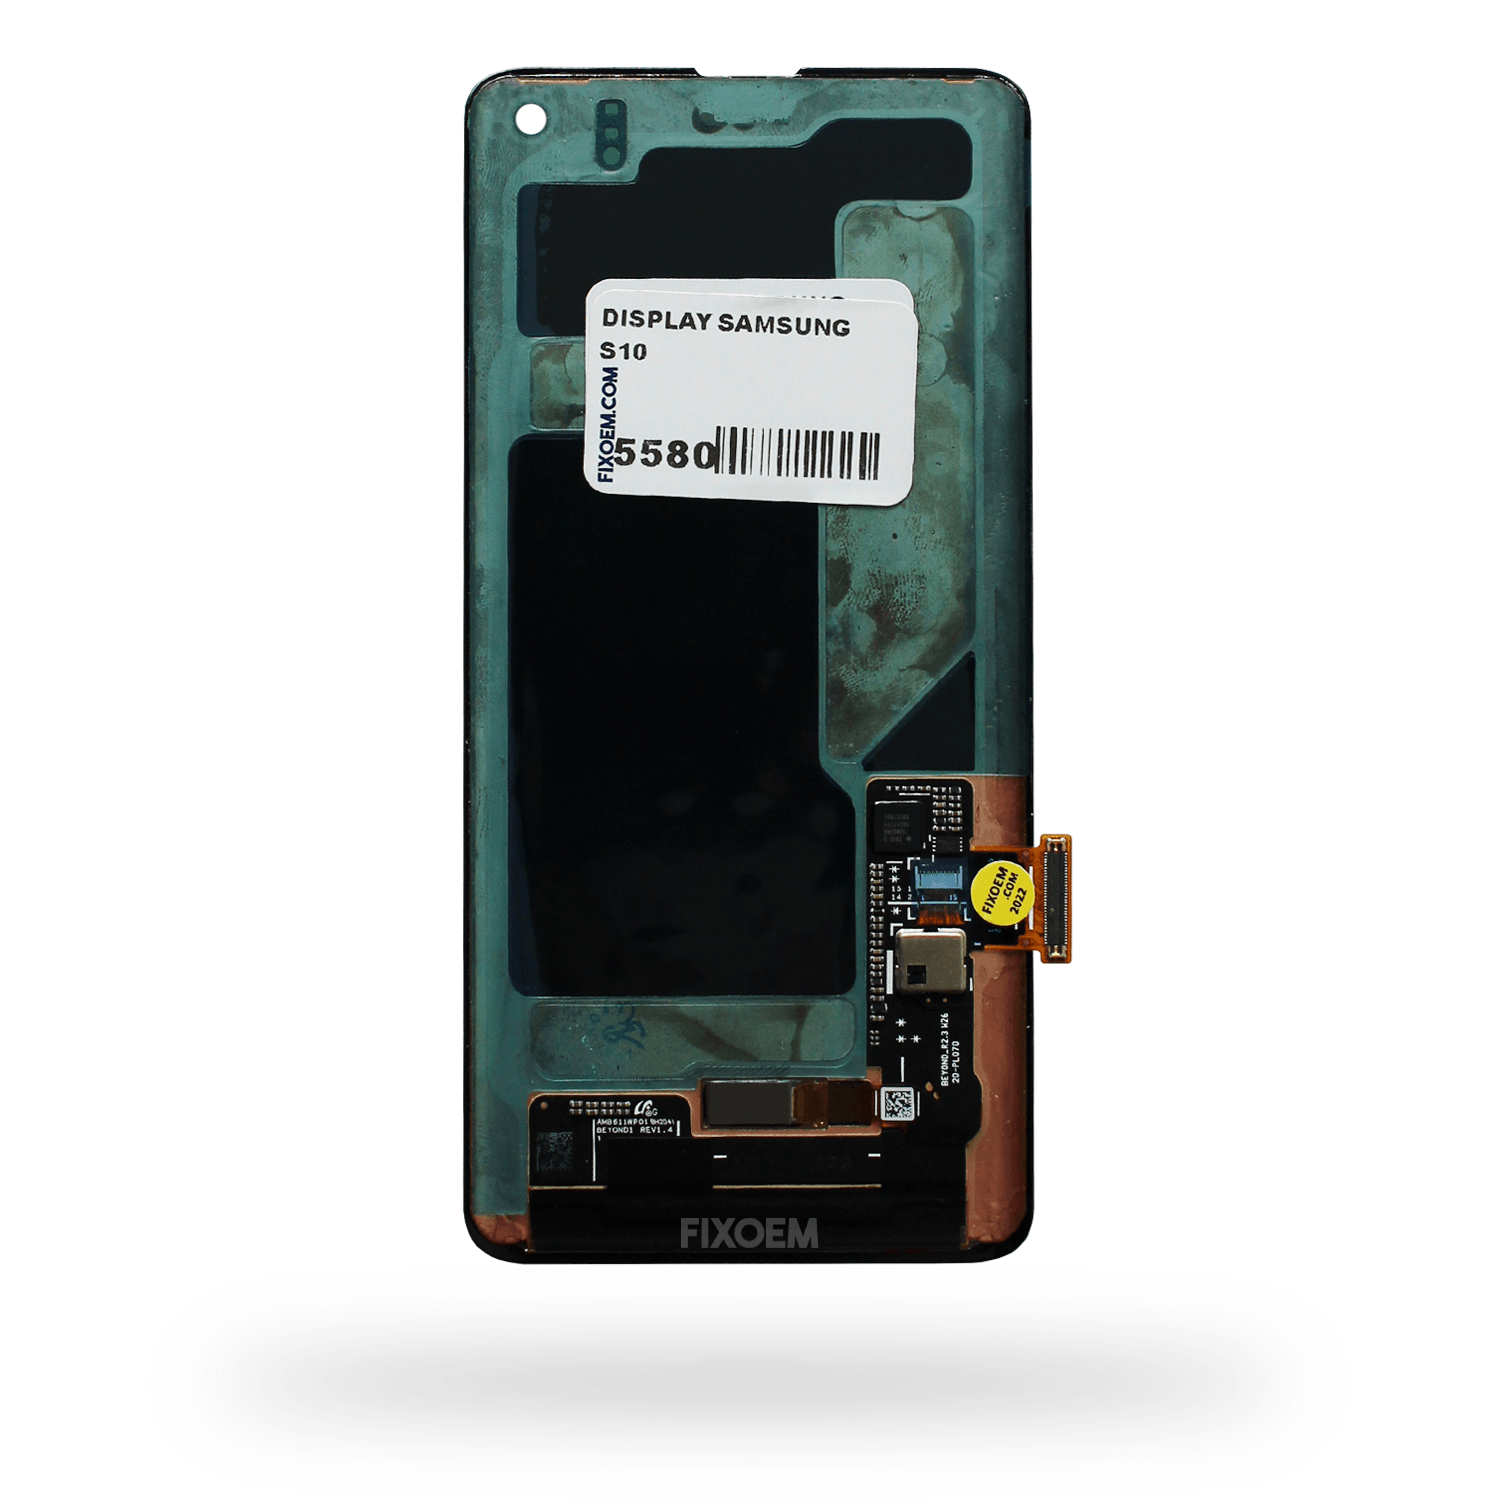 Display Samsung S10 Con Huella Oled Sm-G973 a solo $ 4250.00 Refaccion y puestos celulares, refurbish y microelectronica.- FixOEM